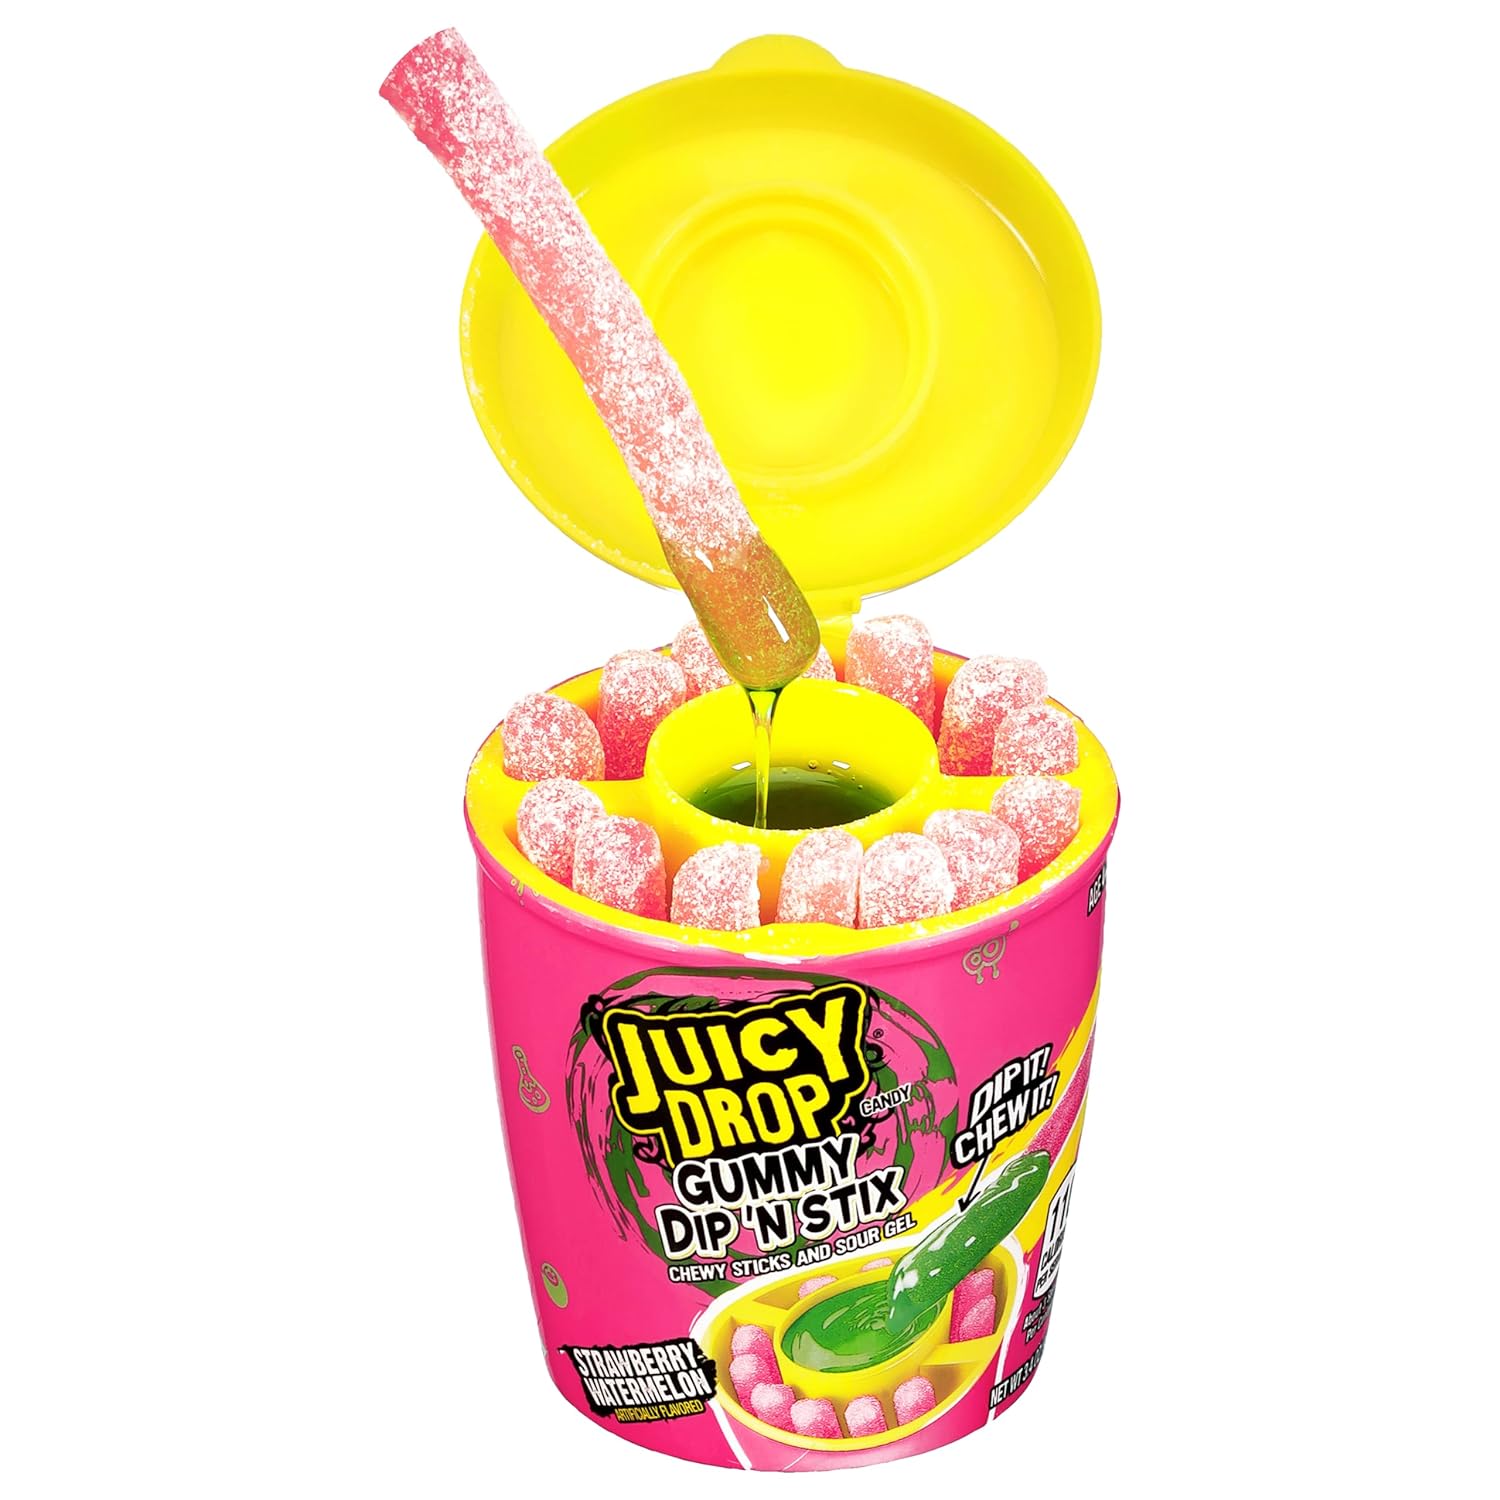 Juicy Drop Dip ‘N Stix Halloween Sweet & Sour Candy Variety 